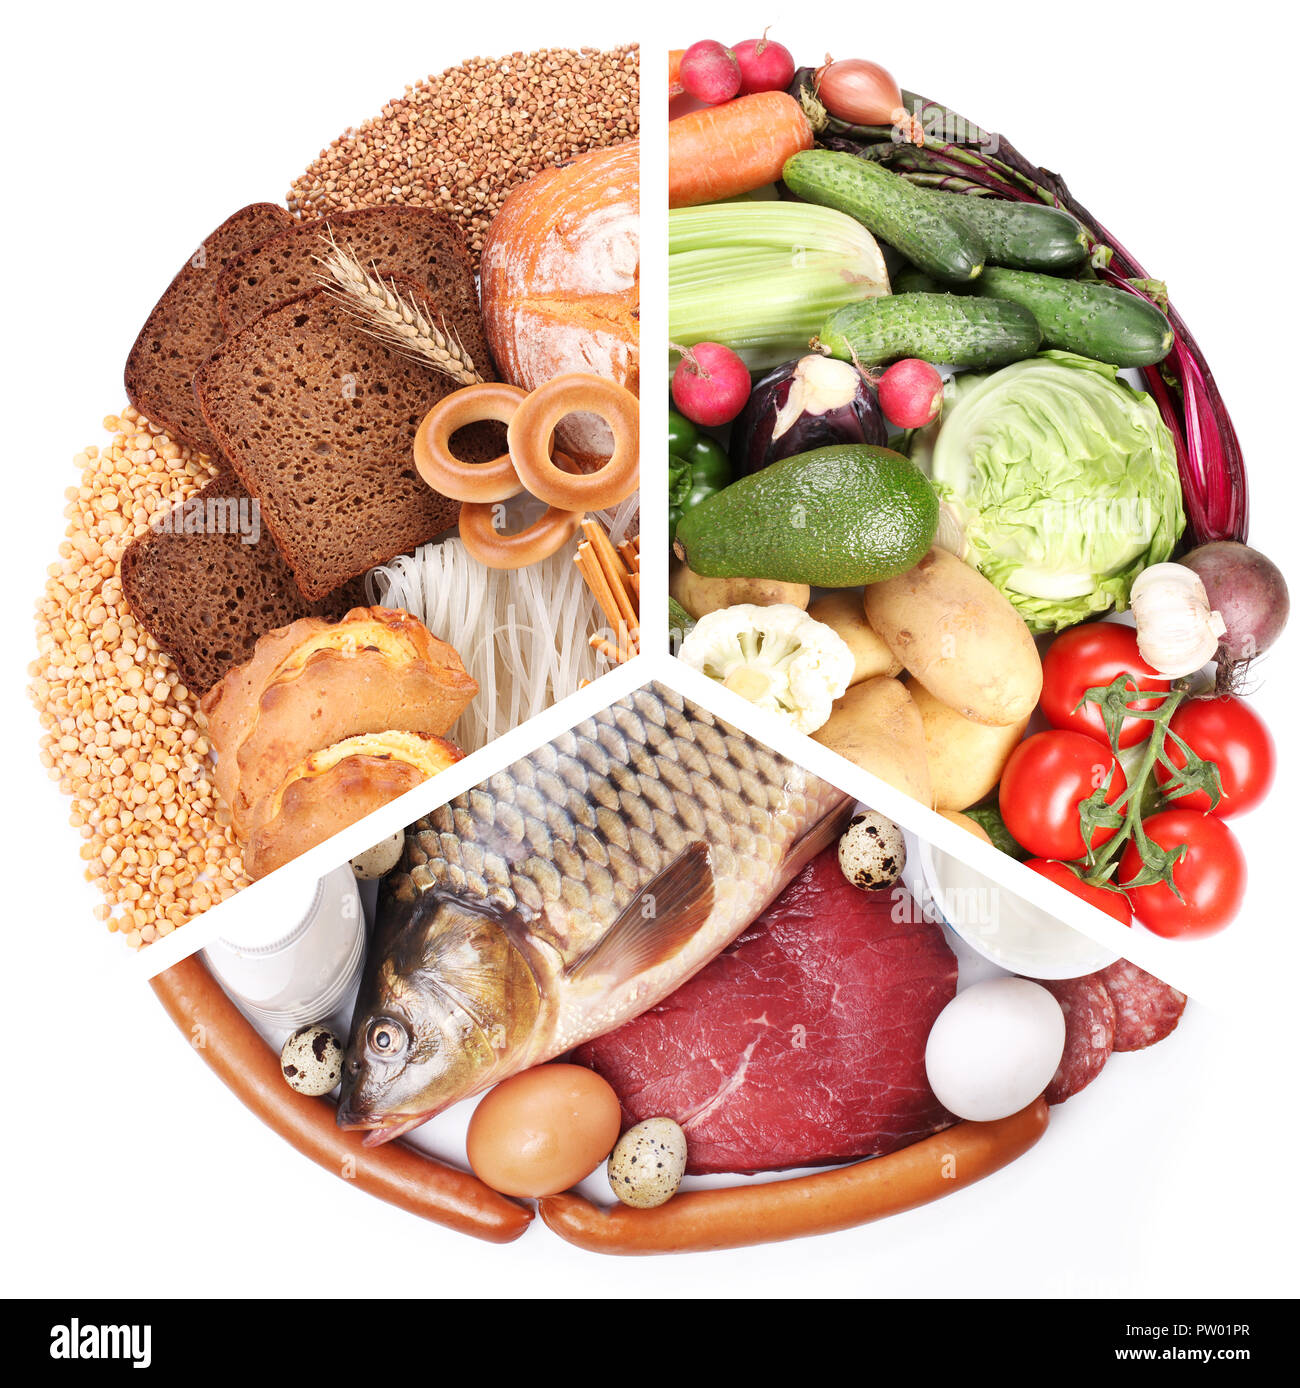 La piramide alimentare o dieta pyramid - schema di base presenta gruppi di alimenti. Foto Stock